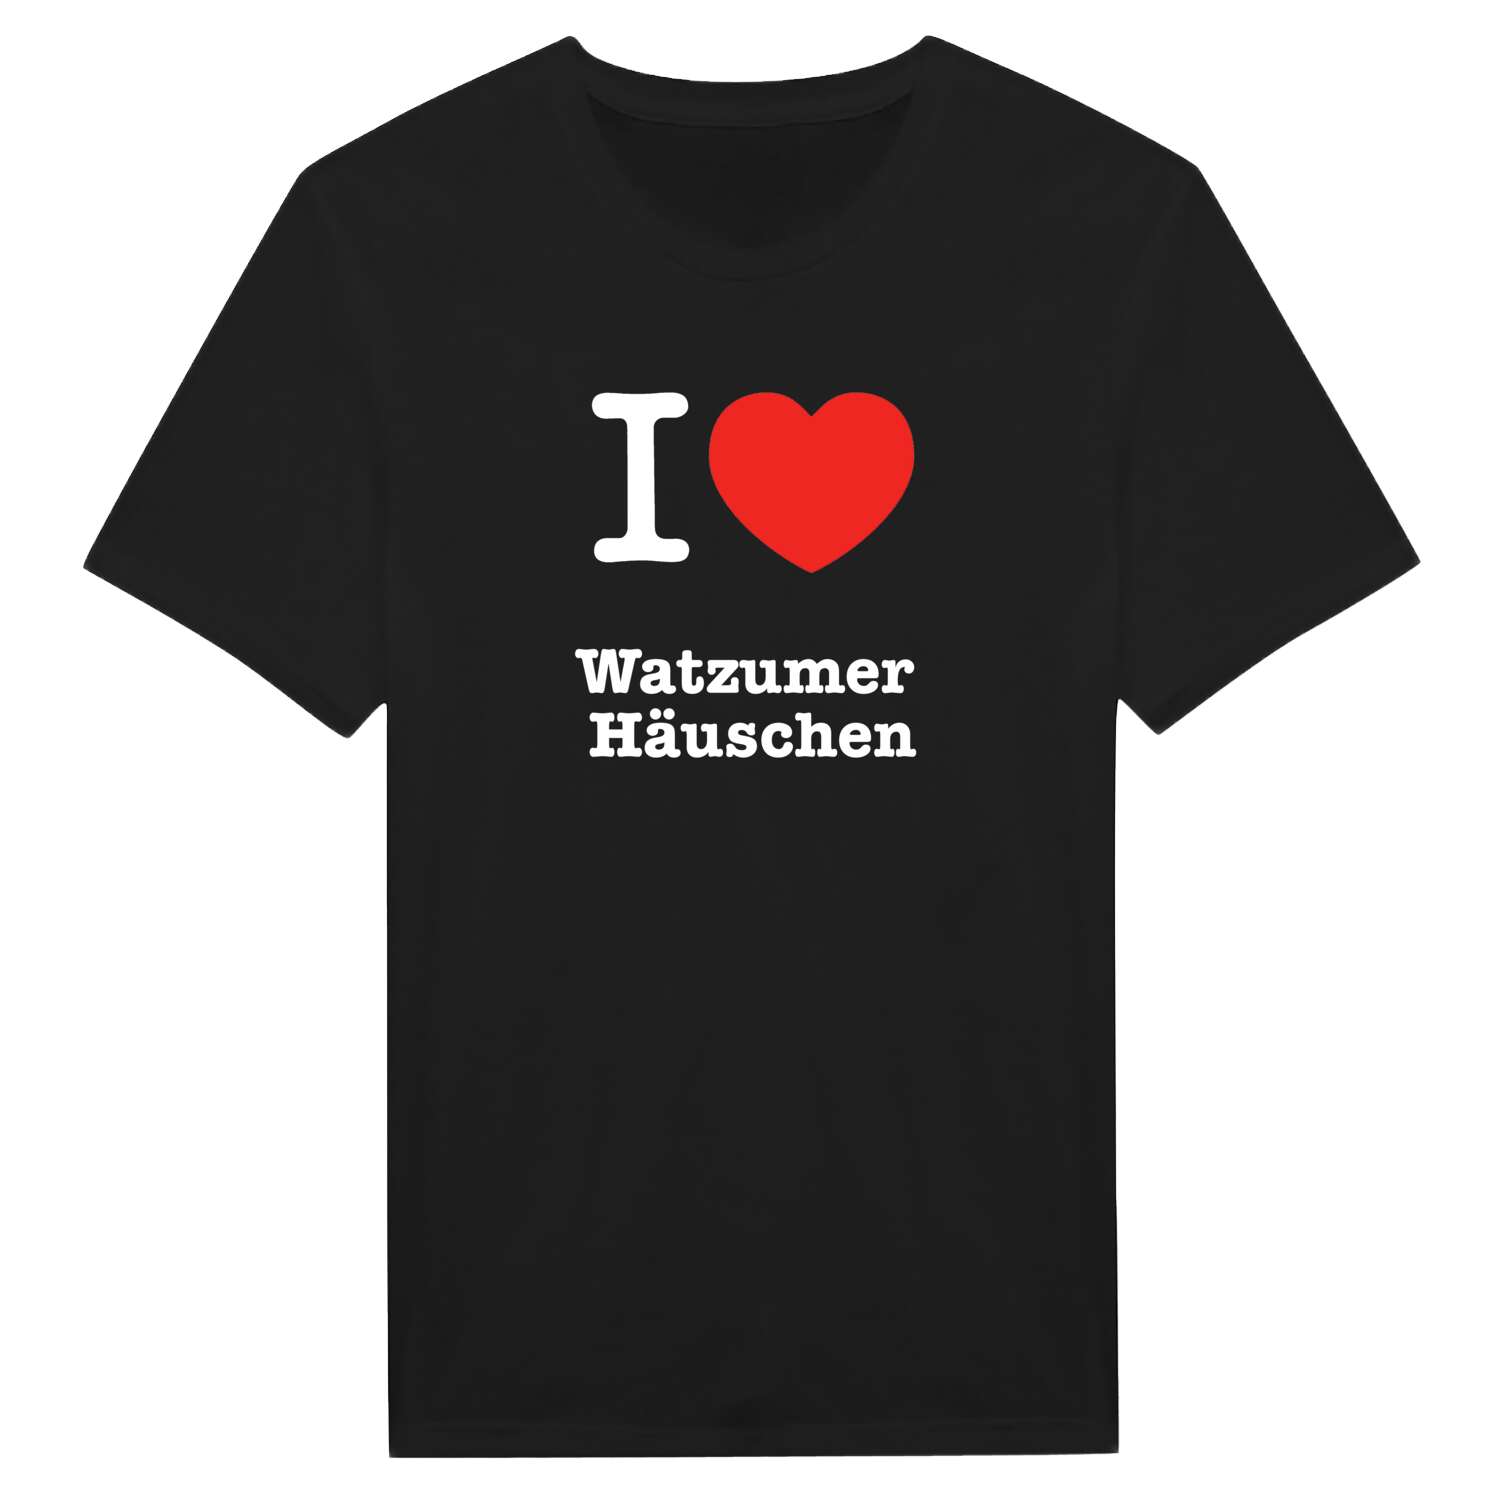 Watzumer Häuschen T-Shirt »I love«